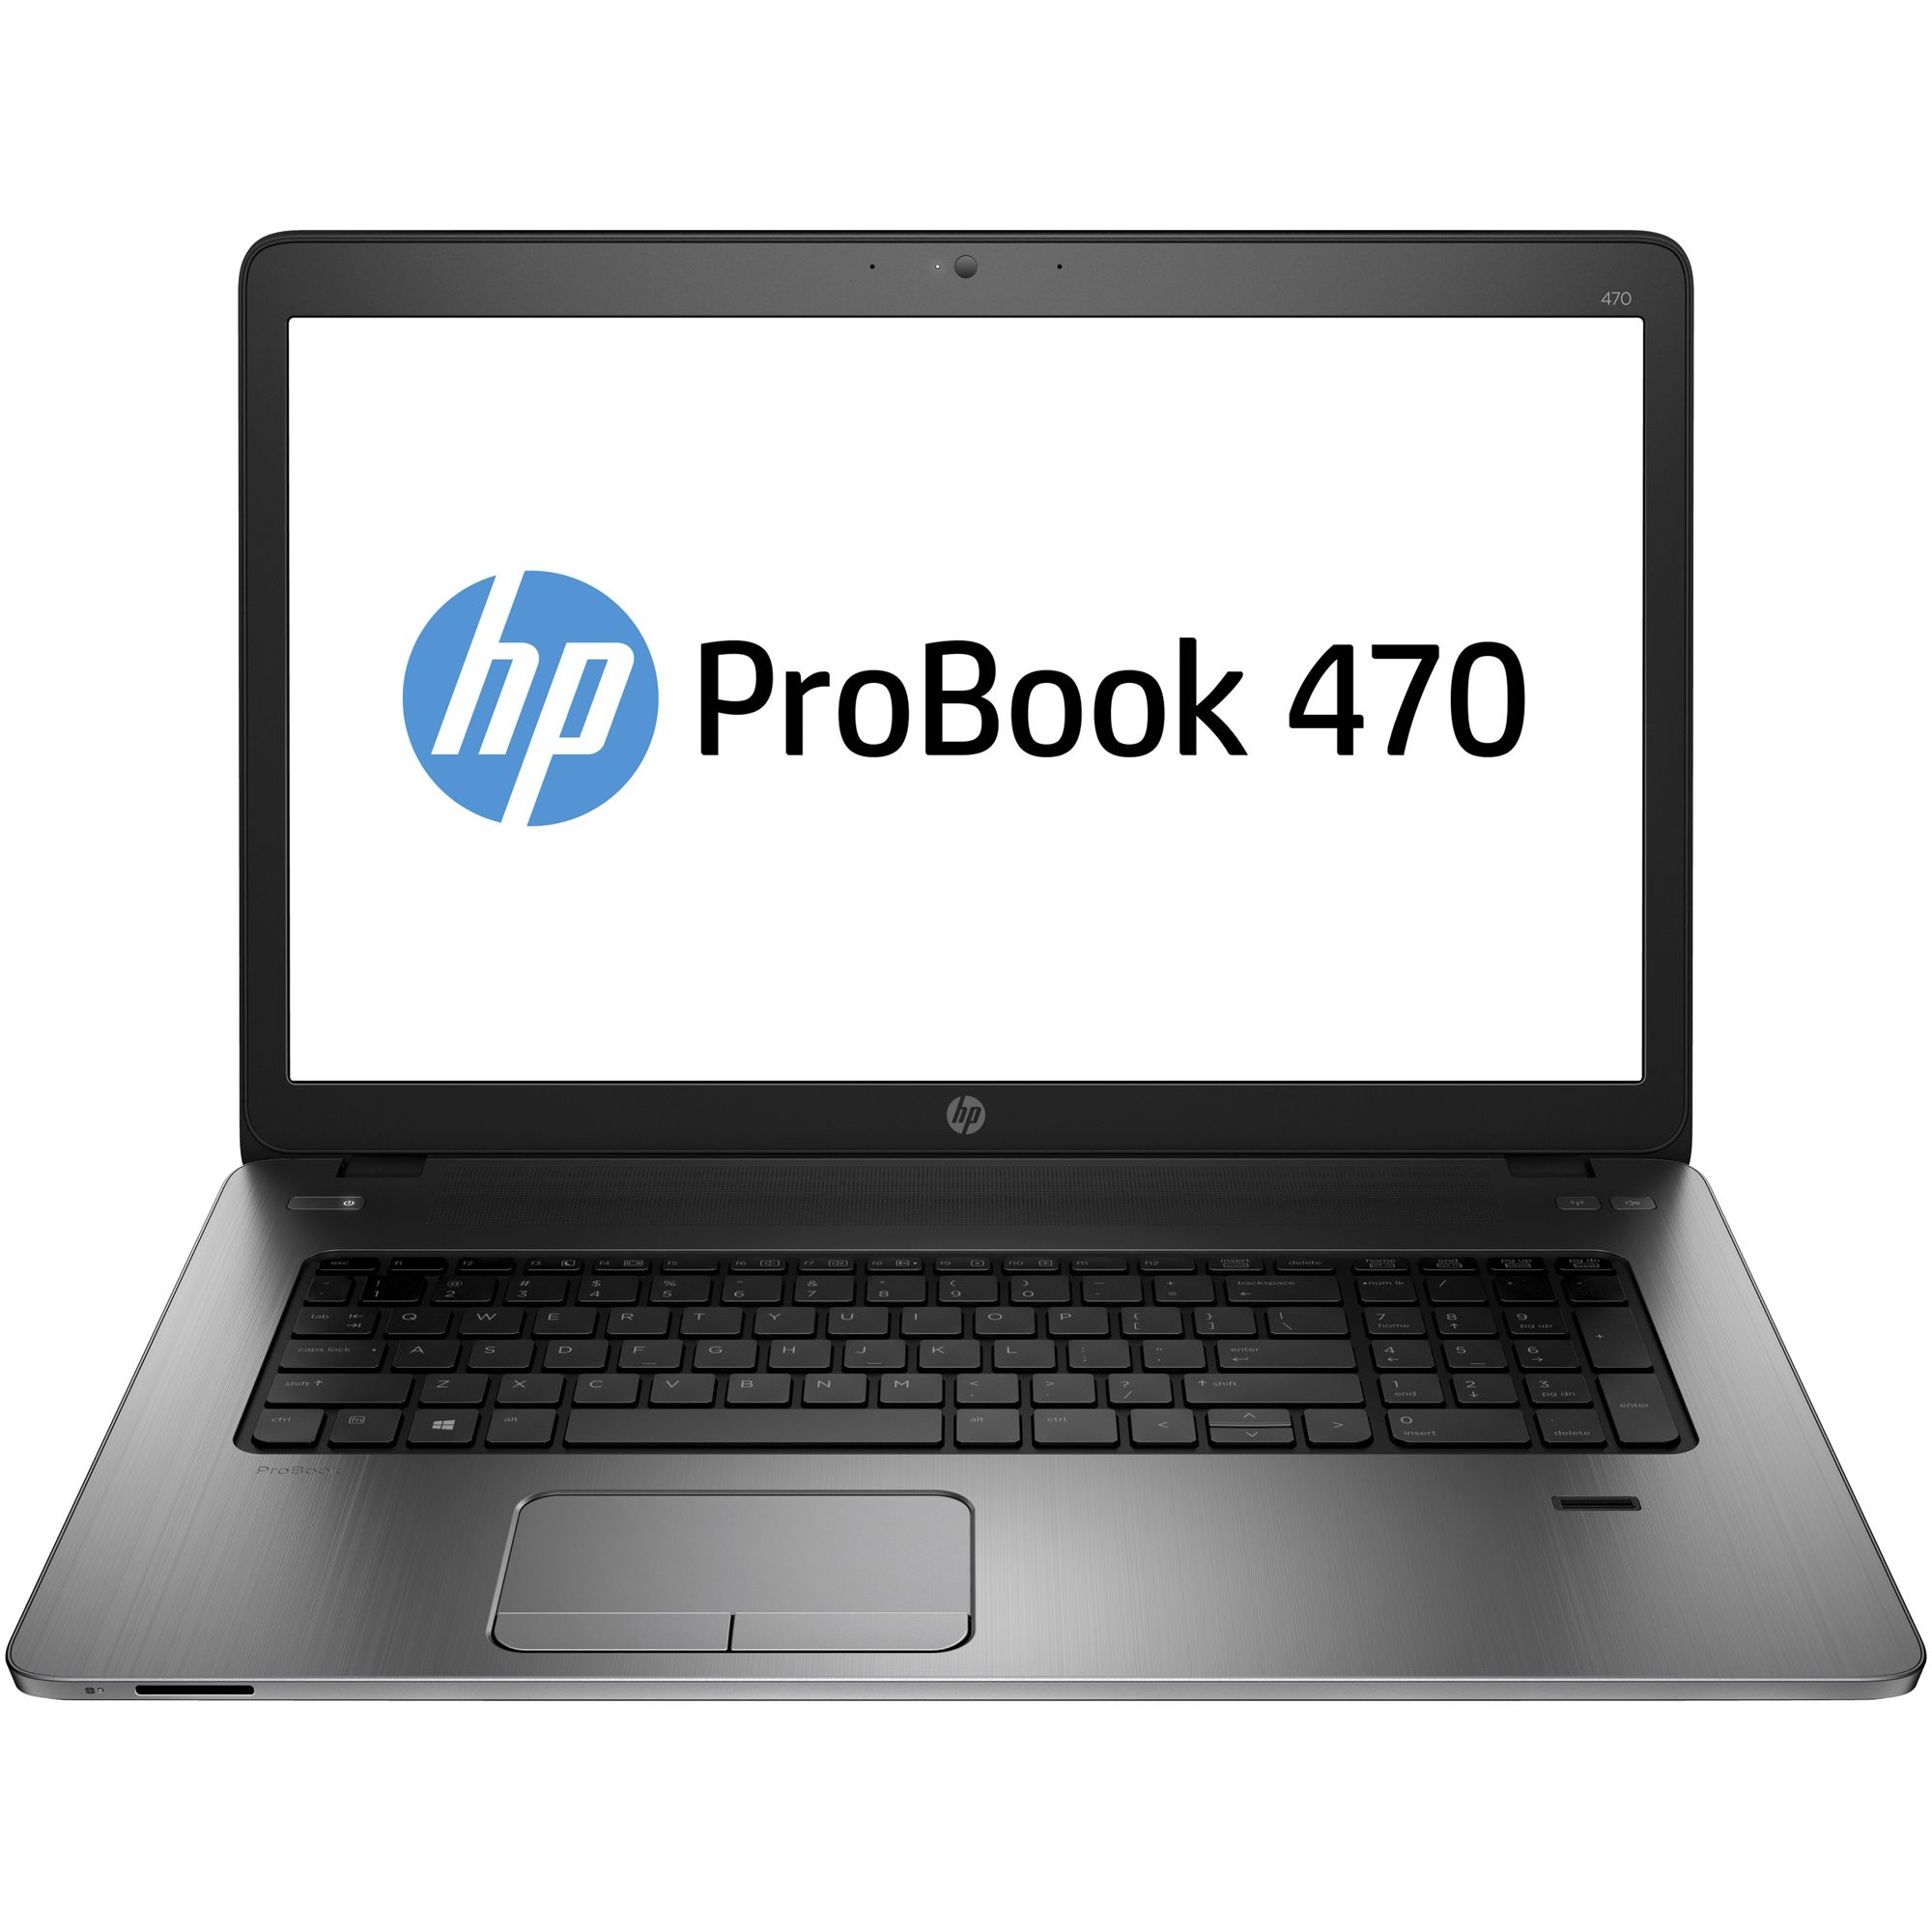  Laptop HP ProBook 470 G2, Intel Core i3-5010U, 4GB DDR3, HDD 500GB, AMD Radeon R5 M255, Free DOS 